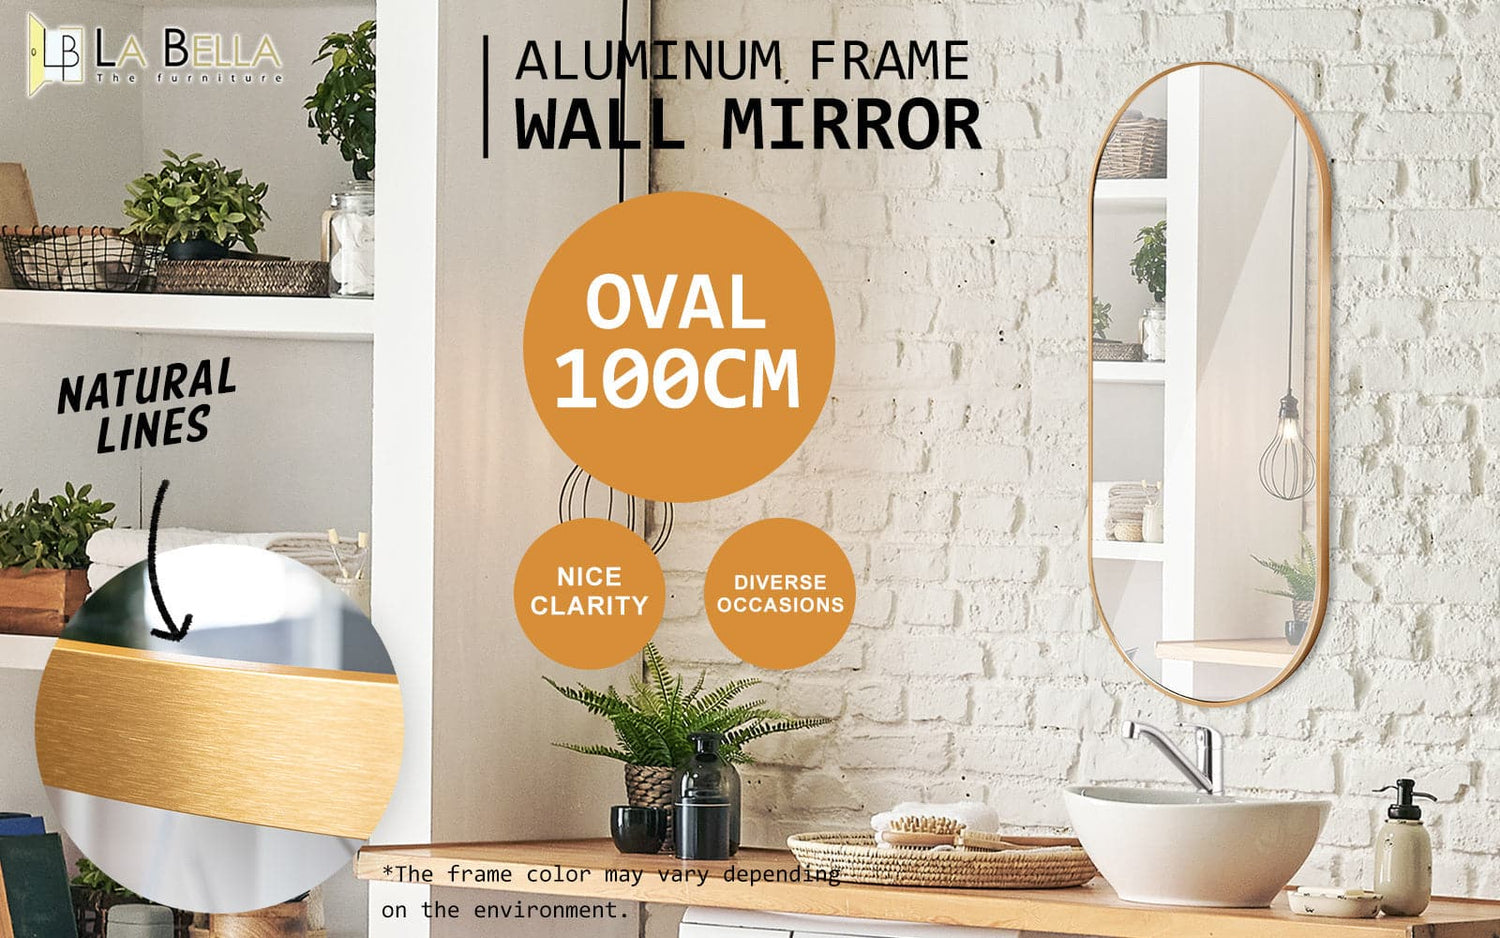 2 Set La Bella Gold Wall Mirror Oval Aluminum Frame Makeup Decor Bathroom Vanity 45x100cm-Health &amp; Beauty &gt; Makeup Mirrors-PEROZ Accessories